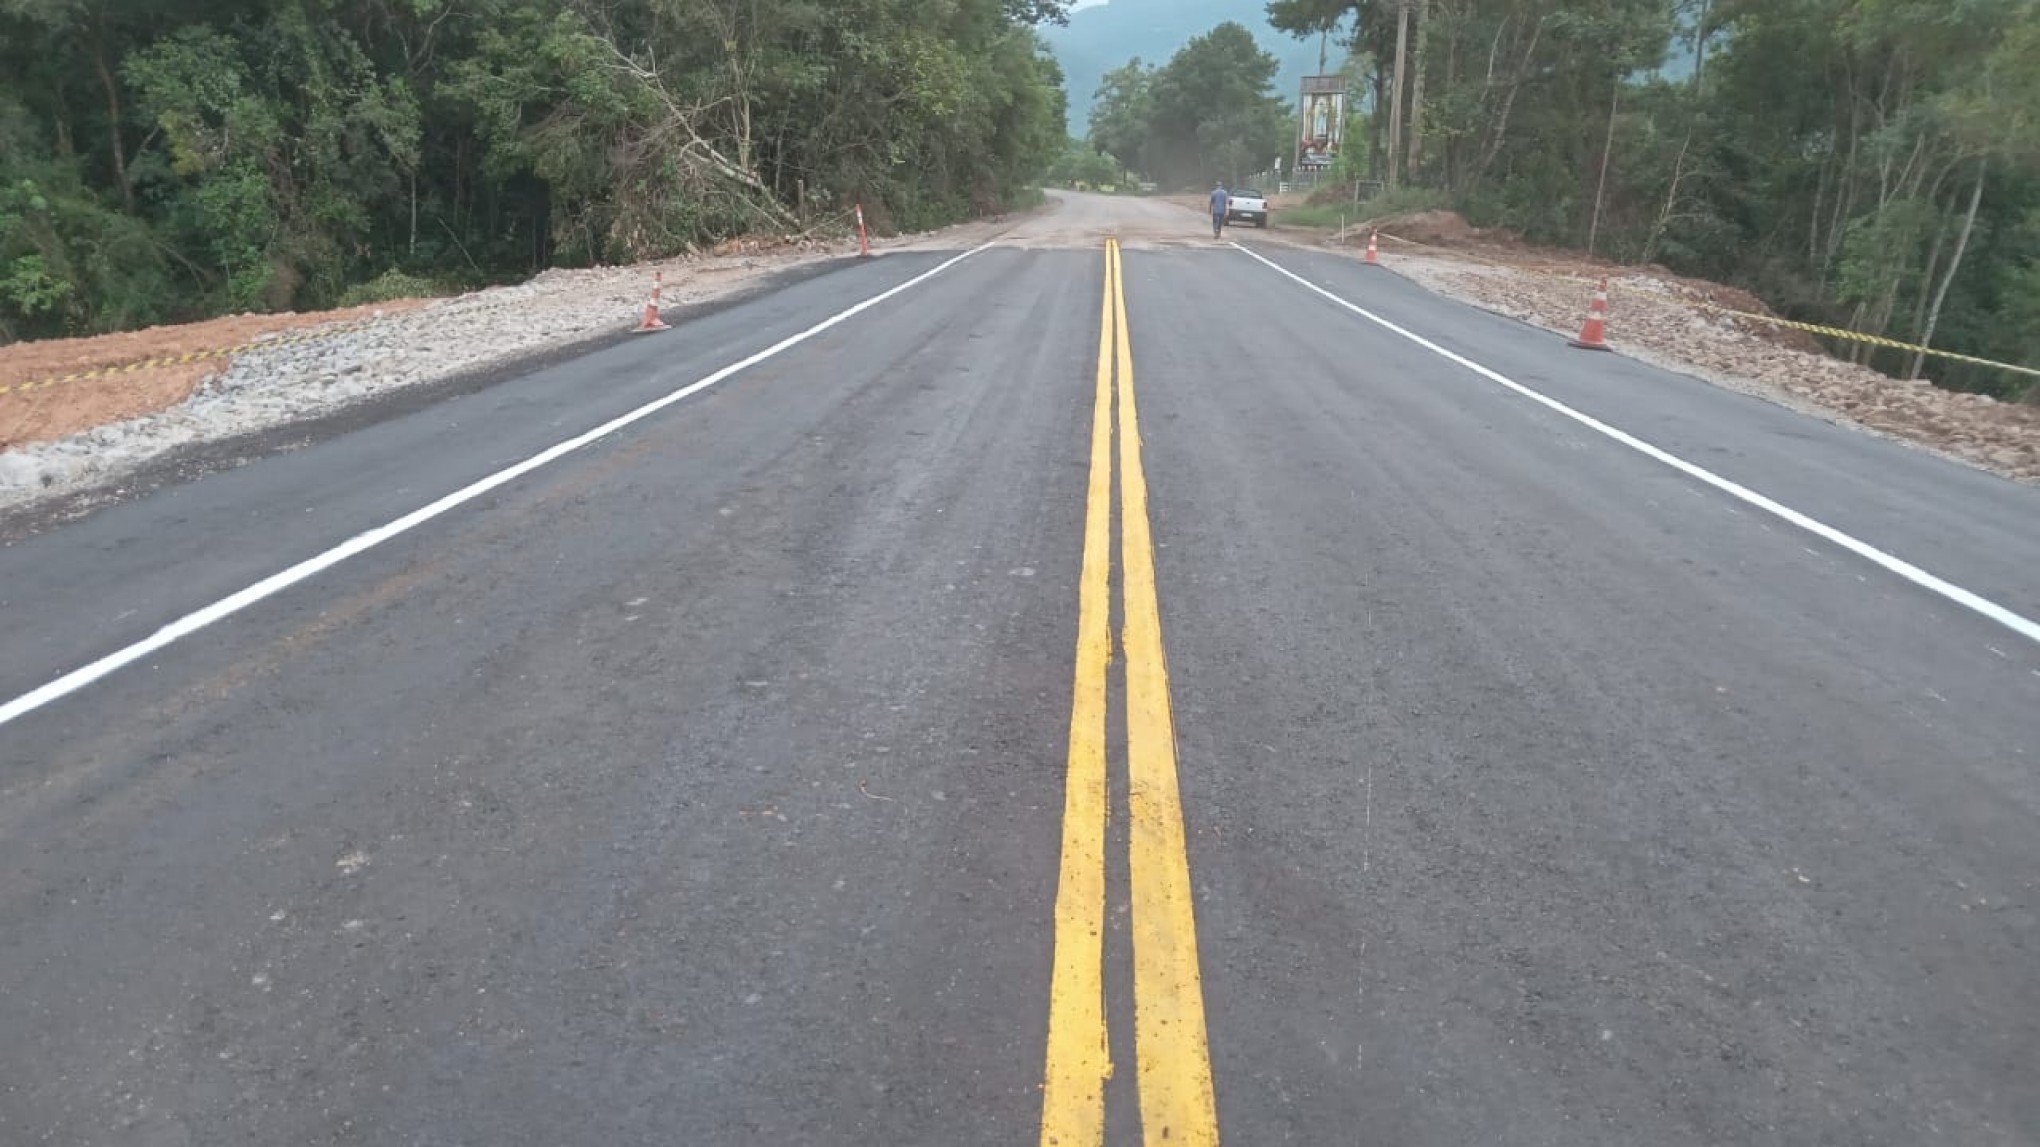 Liberado trânsito em rodovia que liga região da Serra ao Vale do Caí